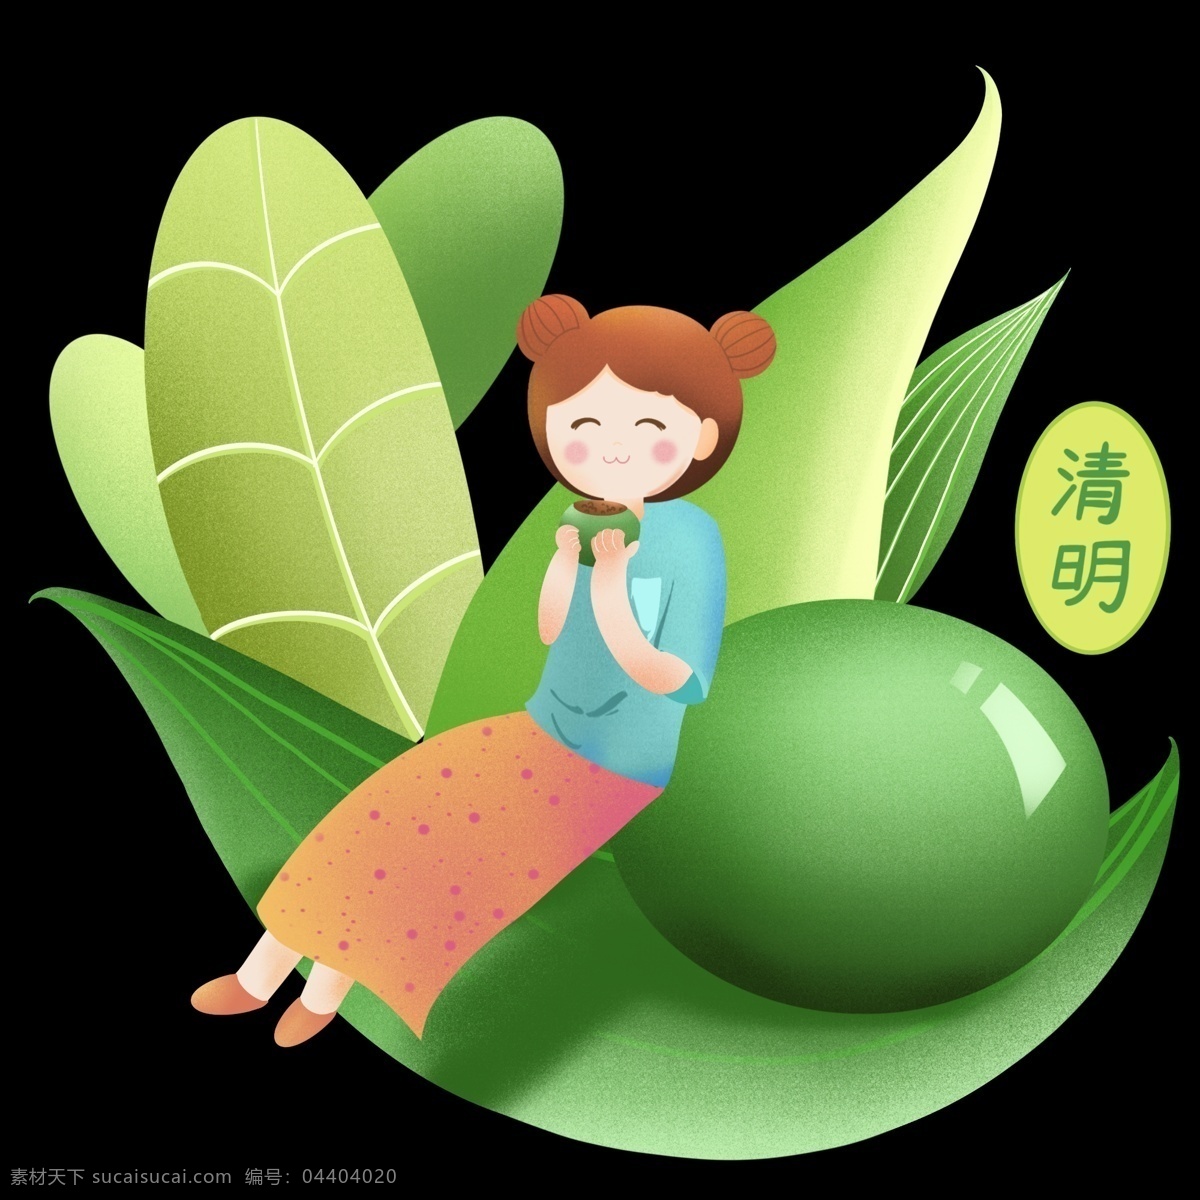 清明节 吃 青团 女孩 人物 插画 吃青团女孩 绿色的青团 绿色的叶子 漂亮的小女孩 卡通人物